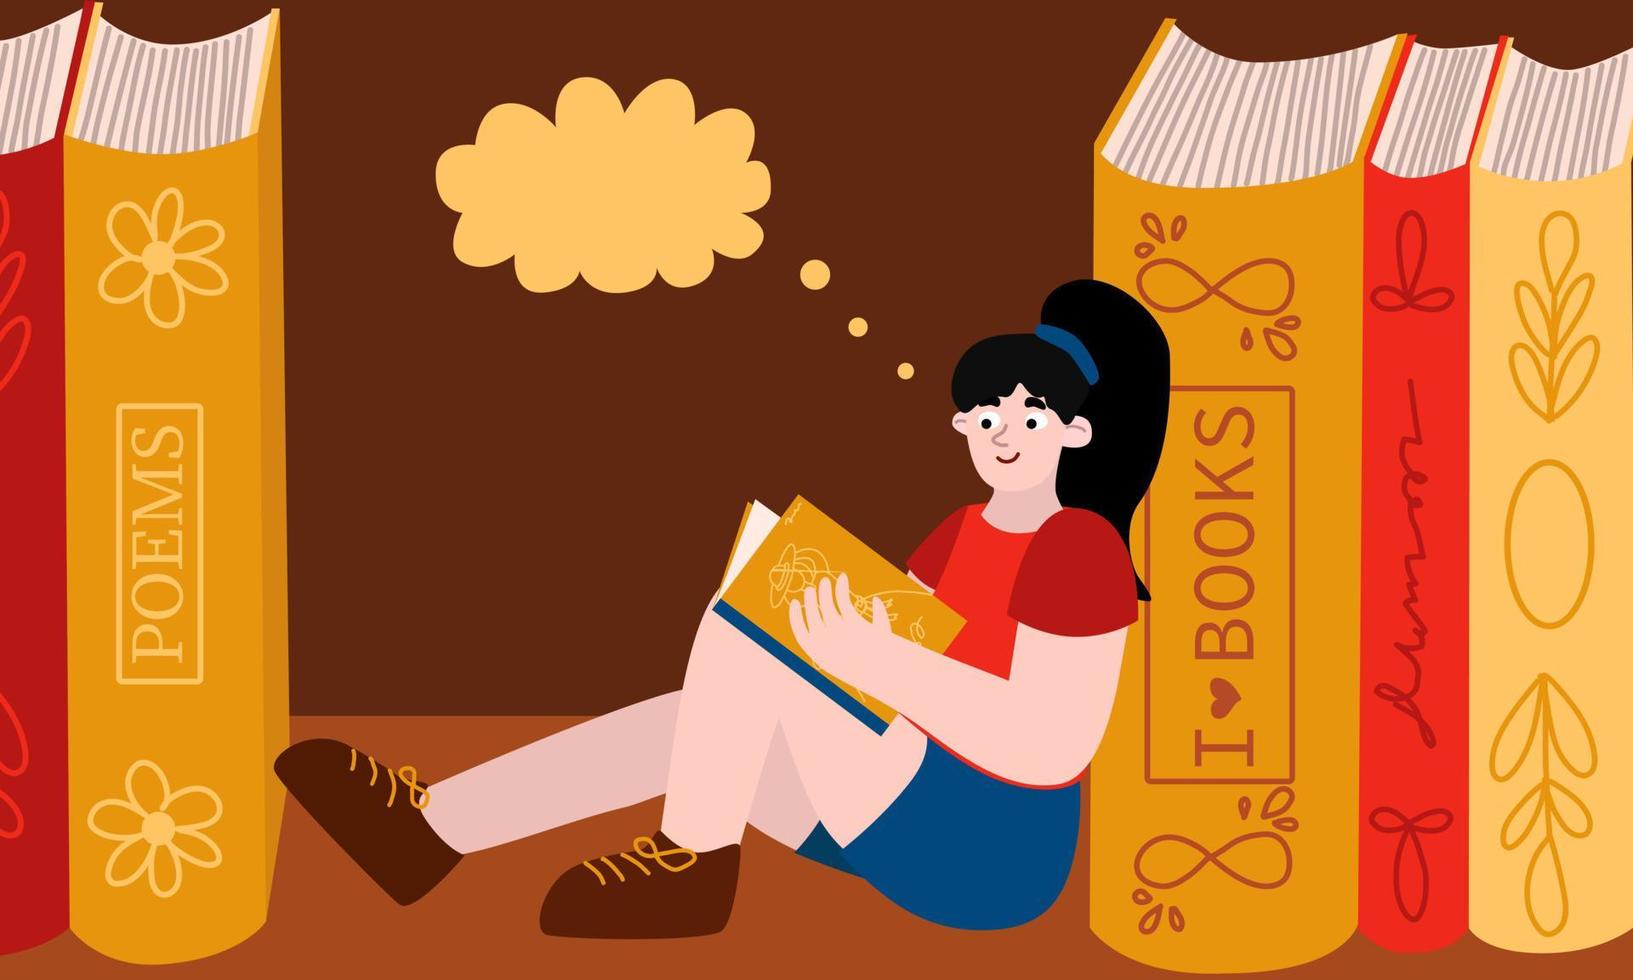 un joven niña se sienta en un estante Entre enorme libros. su pasatiempo es lectura. vector concepto en dibujos animados plano estilo